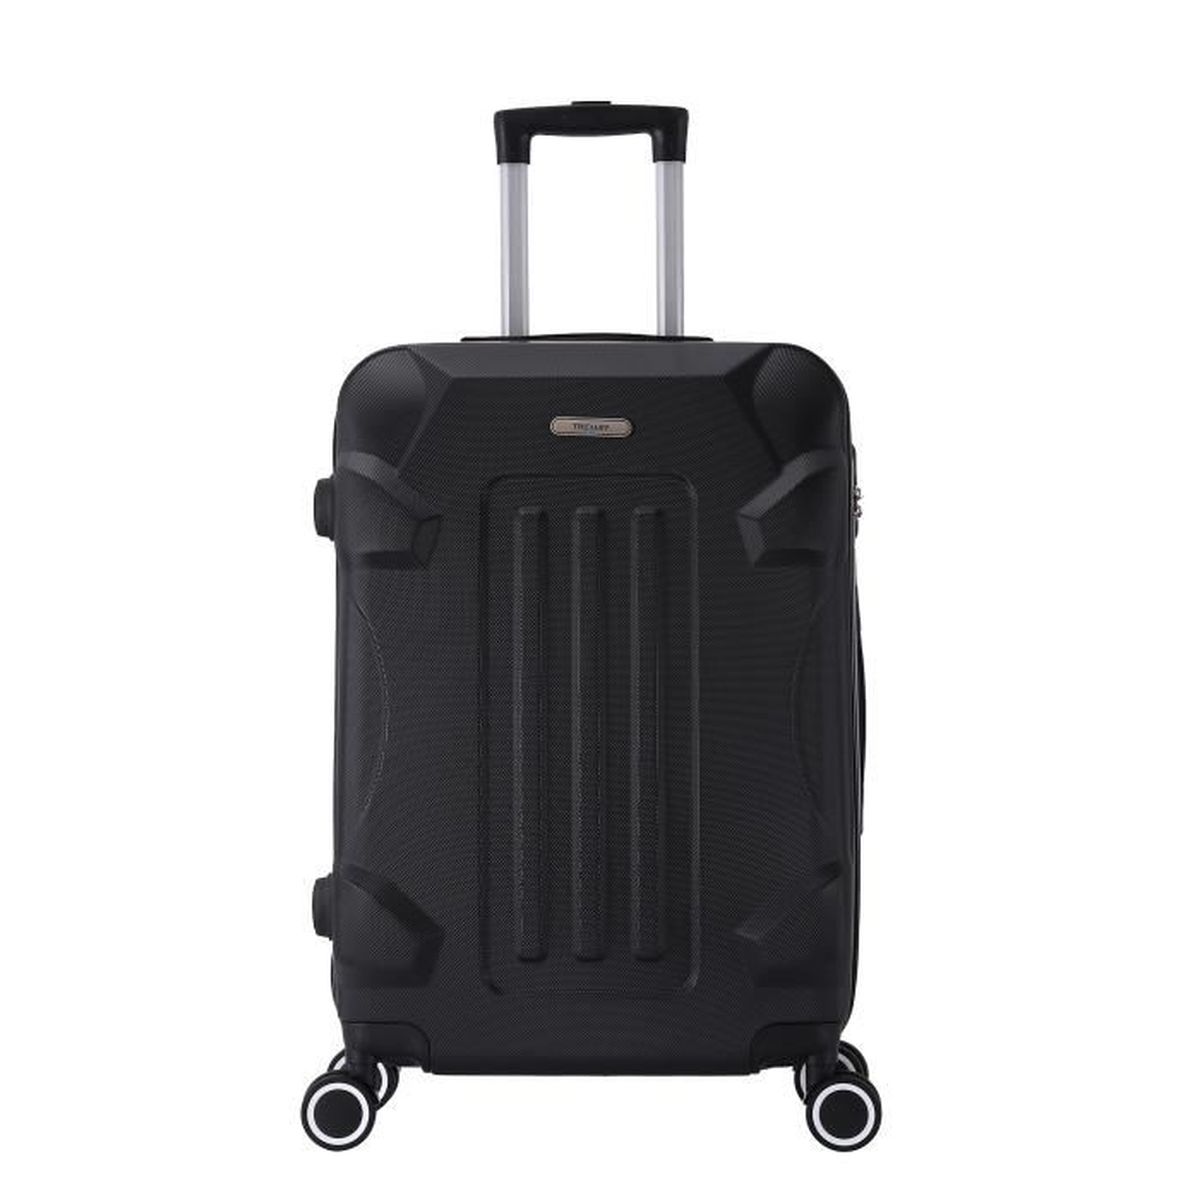 Valise de voyage trolley coque rigide valise voyage valise bagages à main 4 rôles M #375-1 